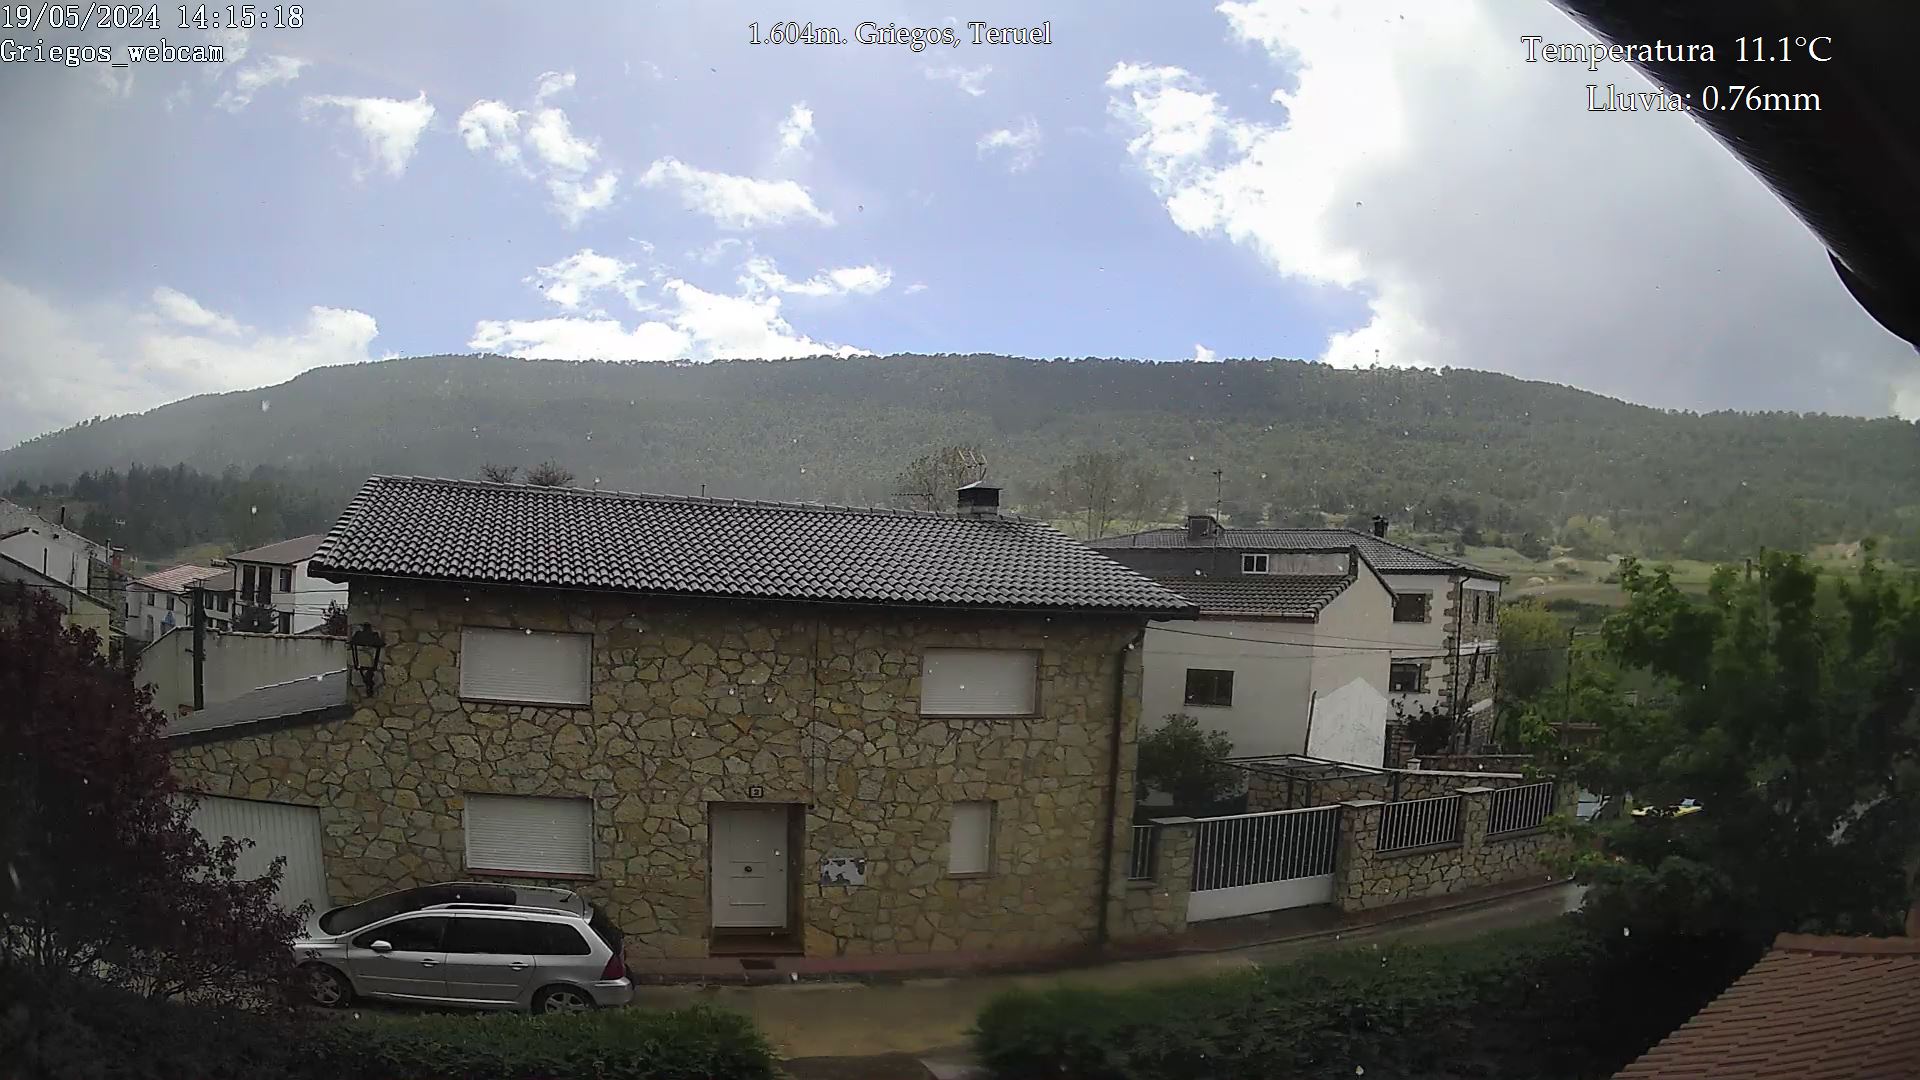 Webcam en Griegos - La Muela